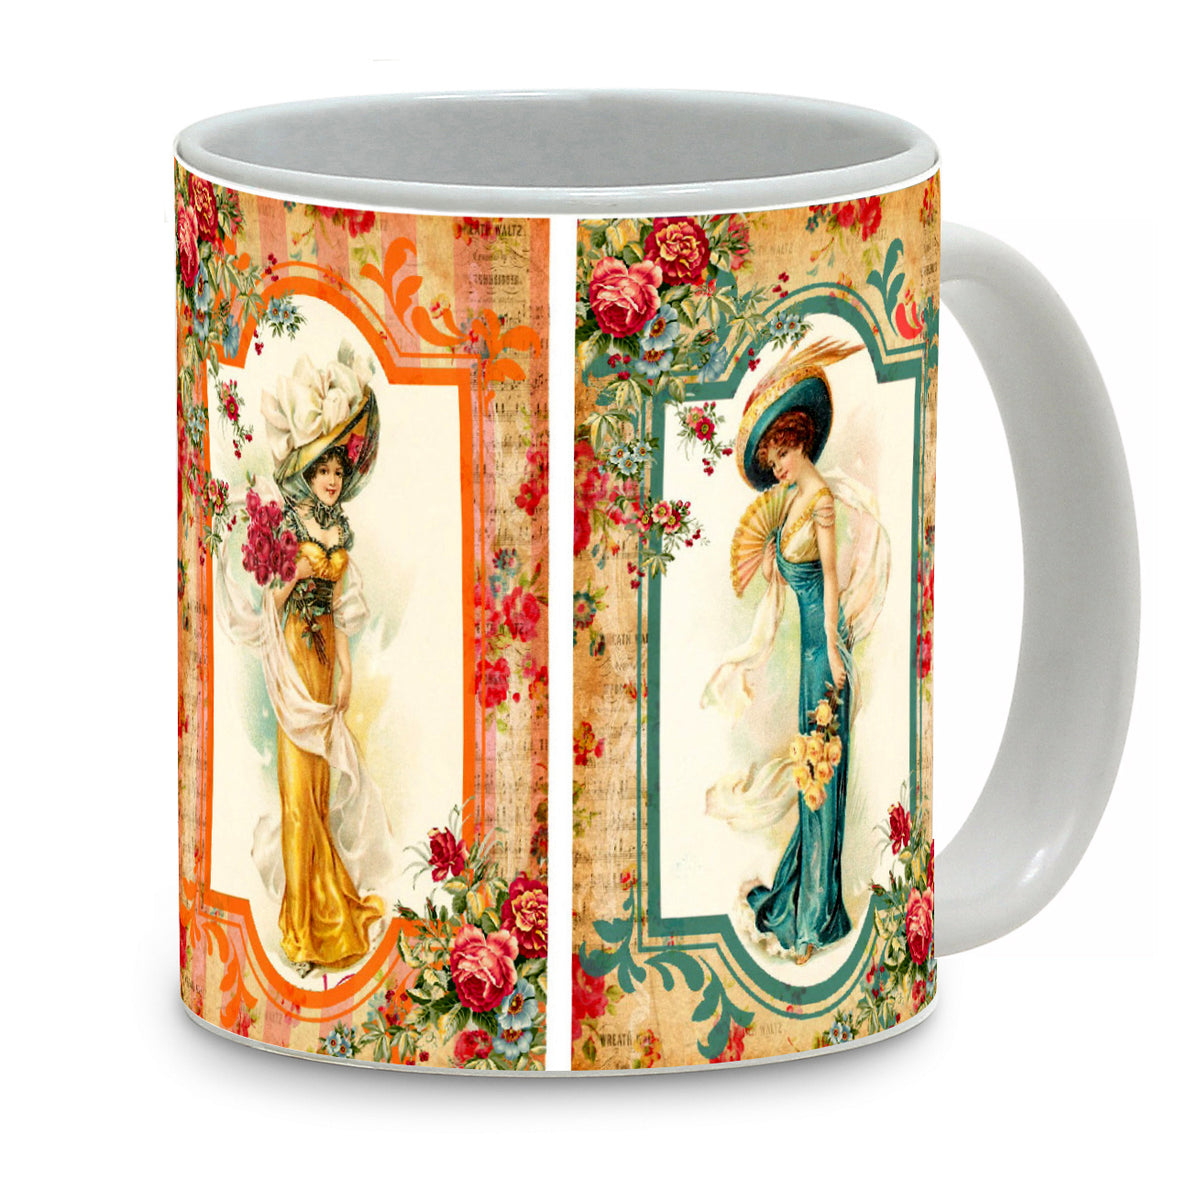 SUBLIMART: Damas - Mug featuring a beautiful 18th Century Damas - Artistica.com